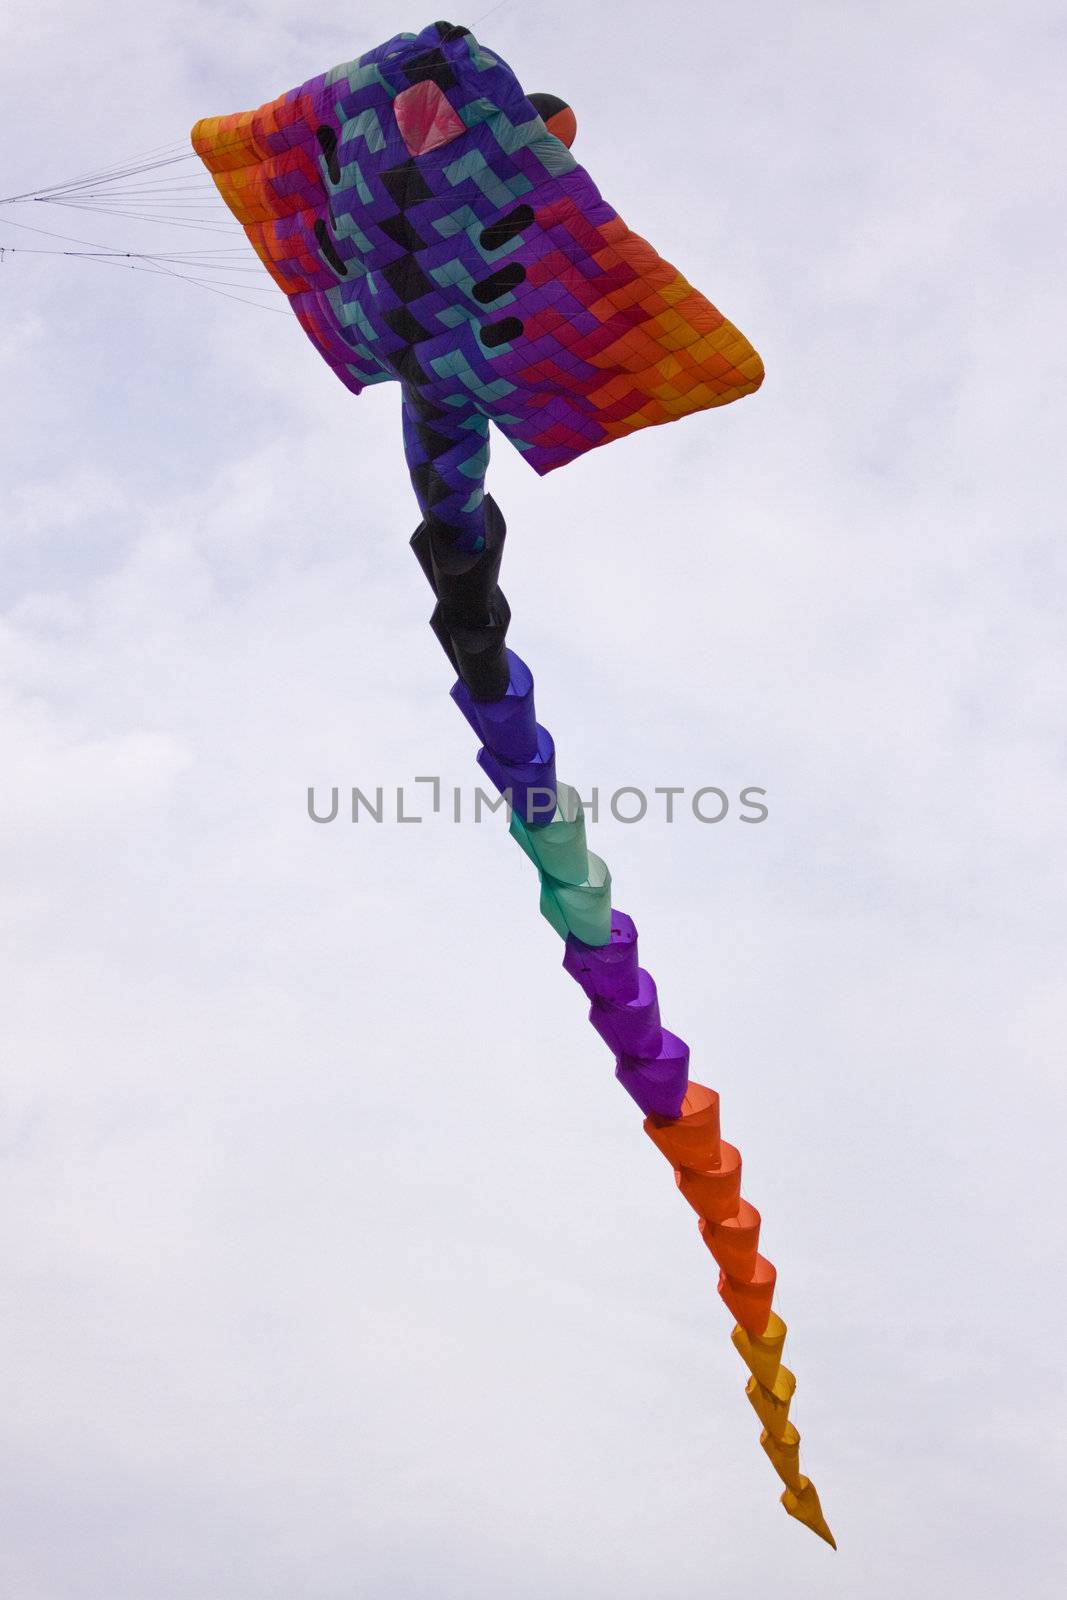 Colourful kite riding high